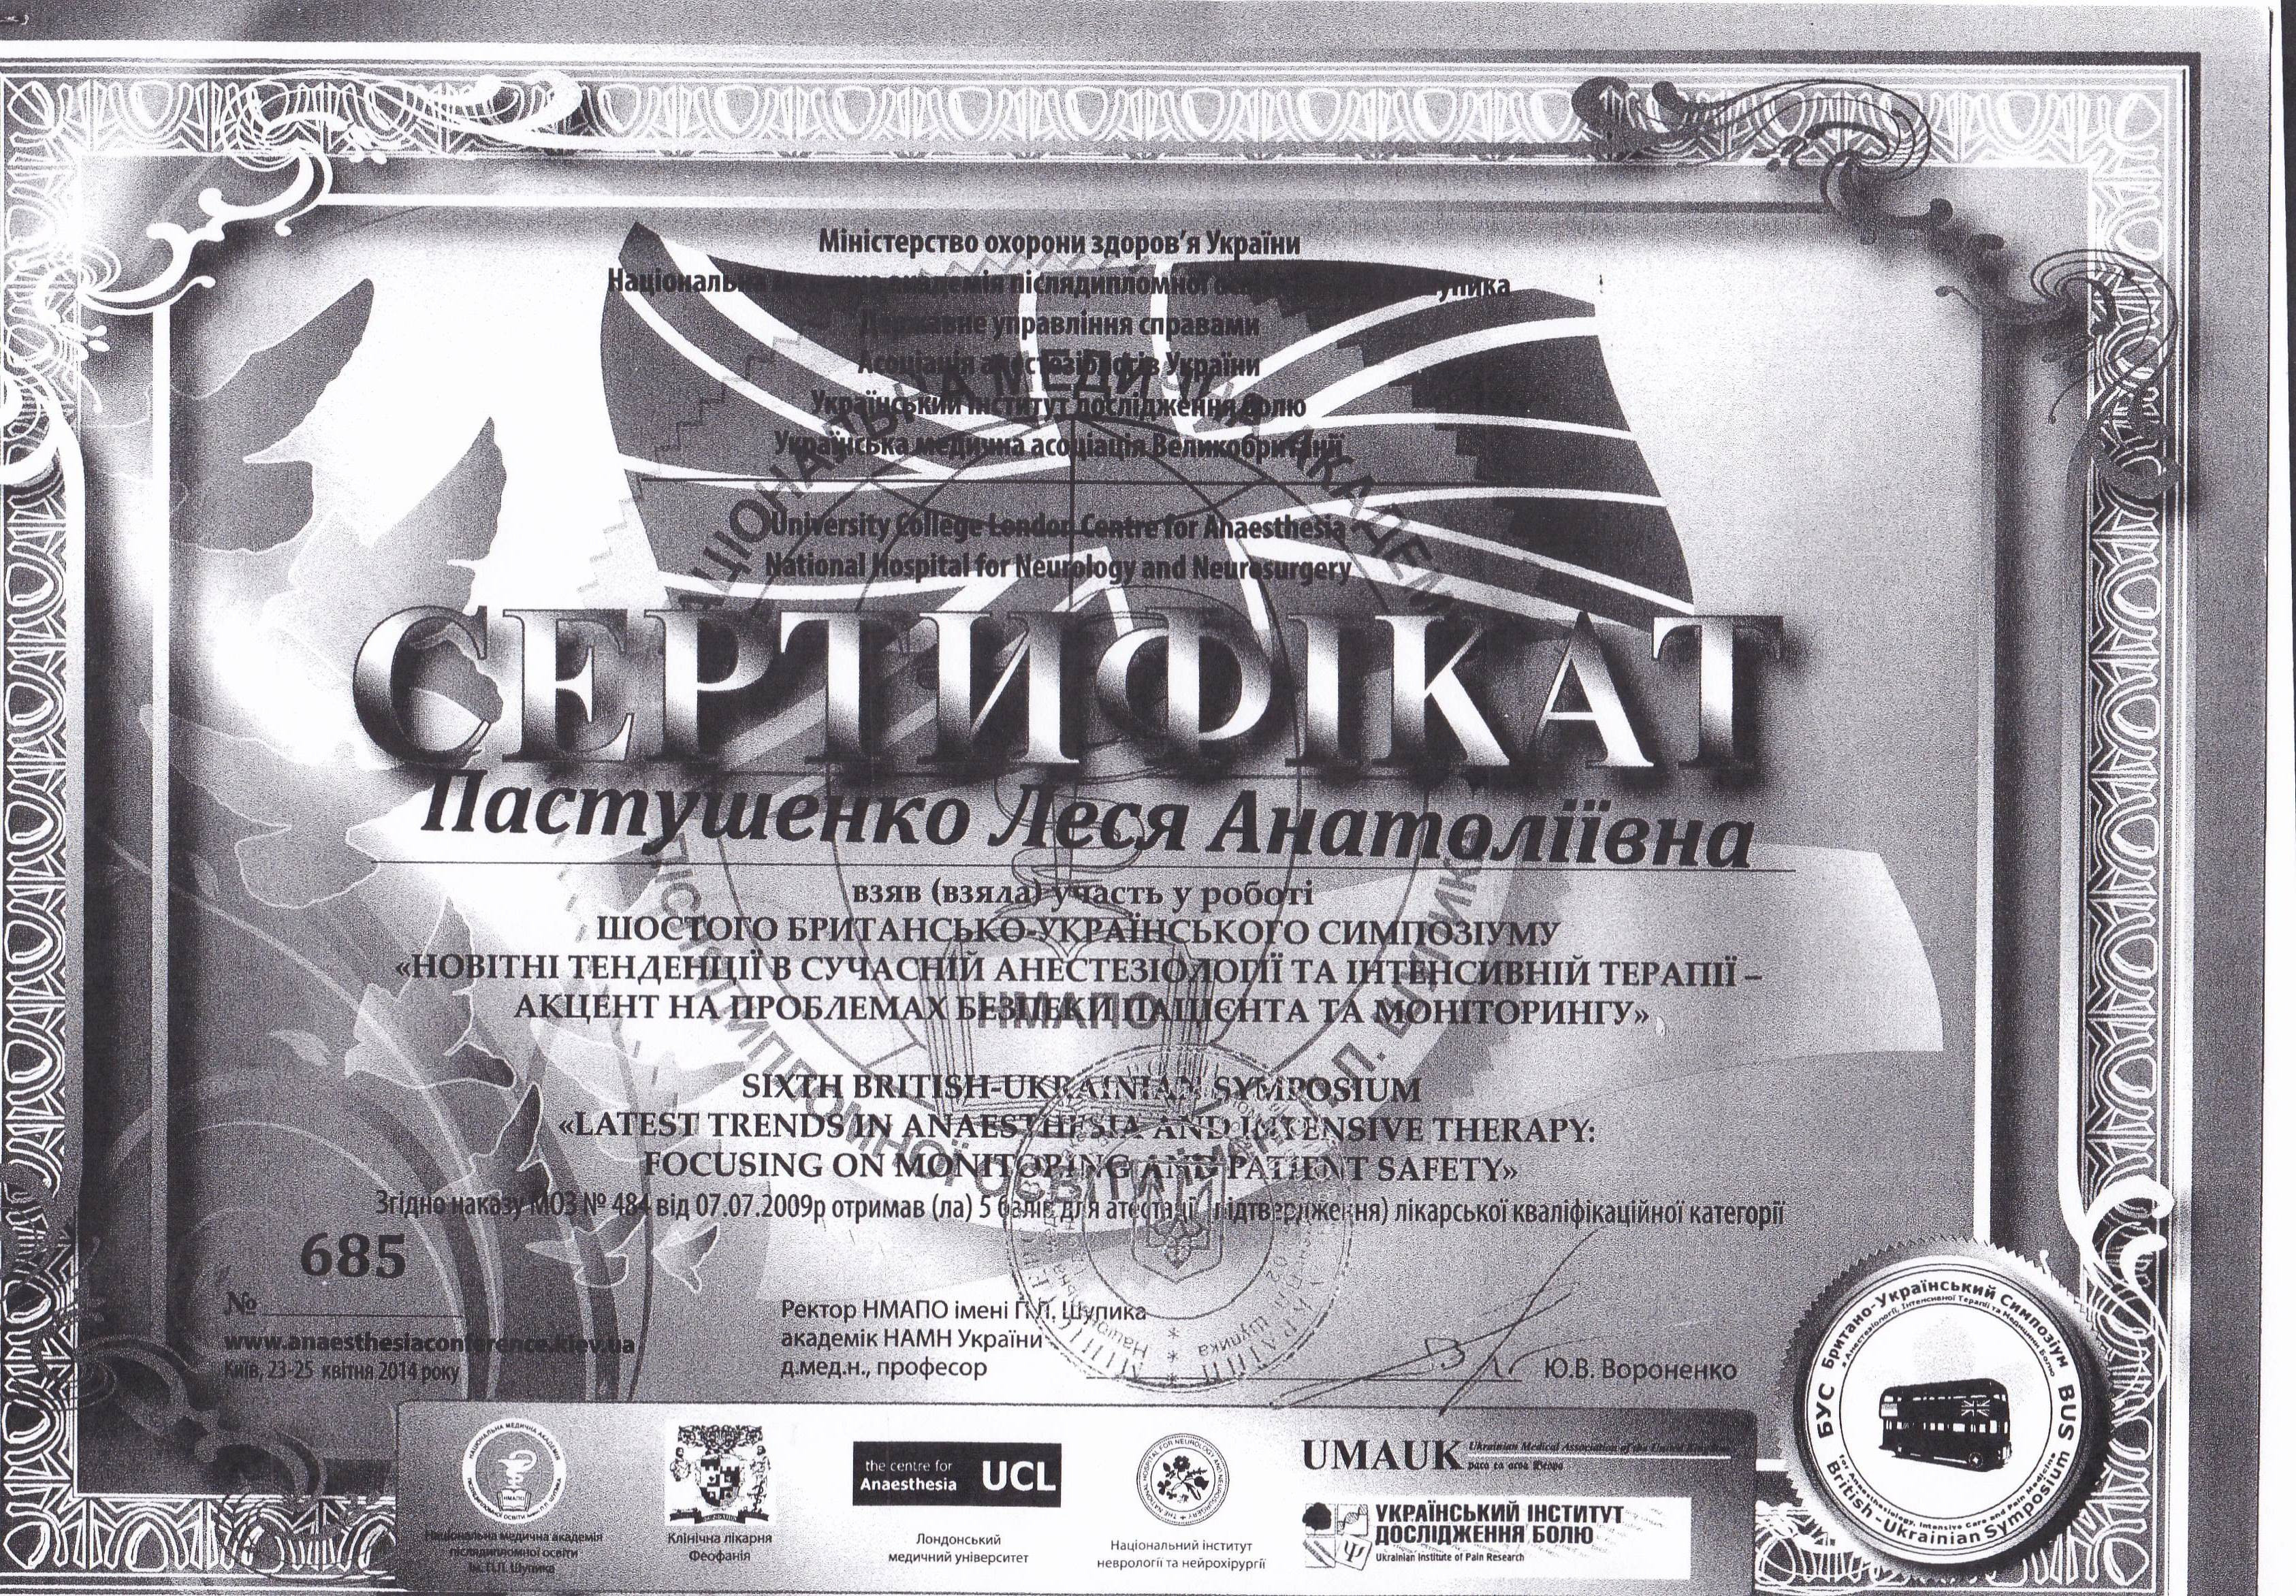 Сертификат об участии в симпозиуме 